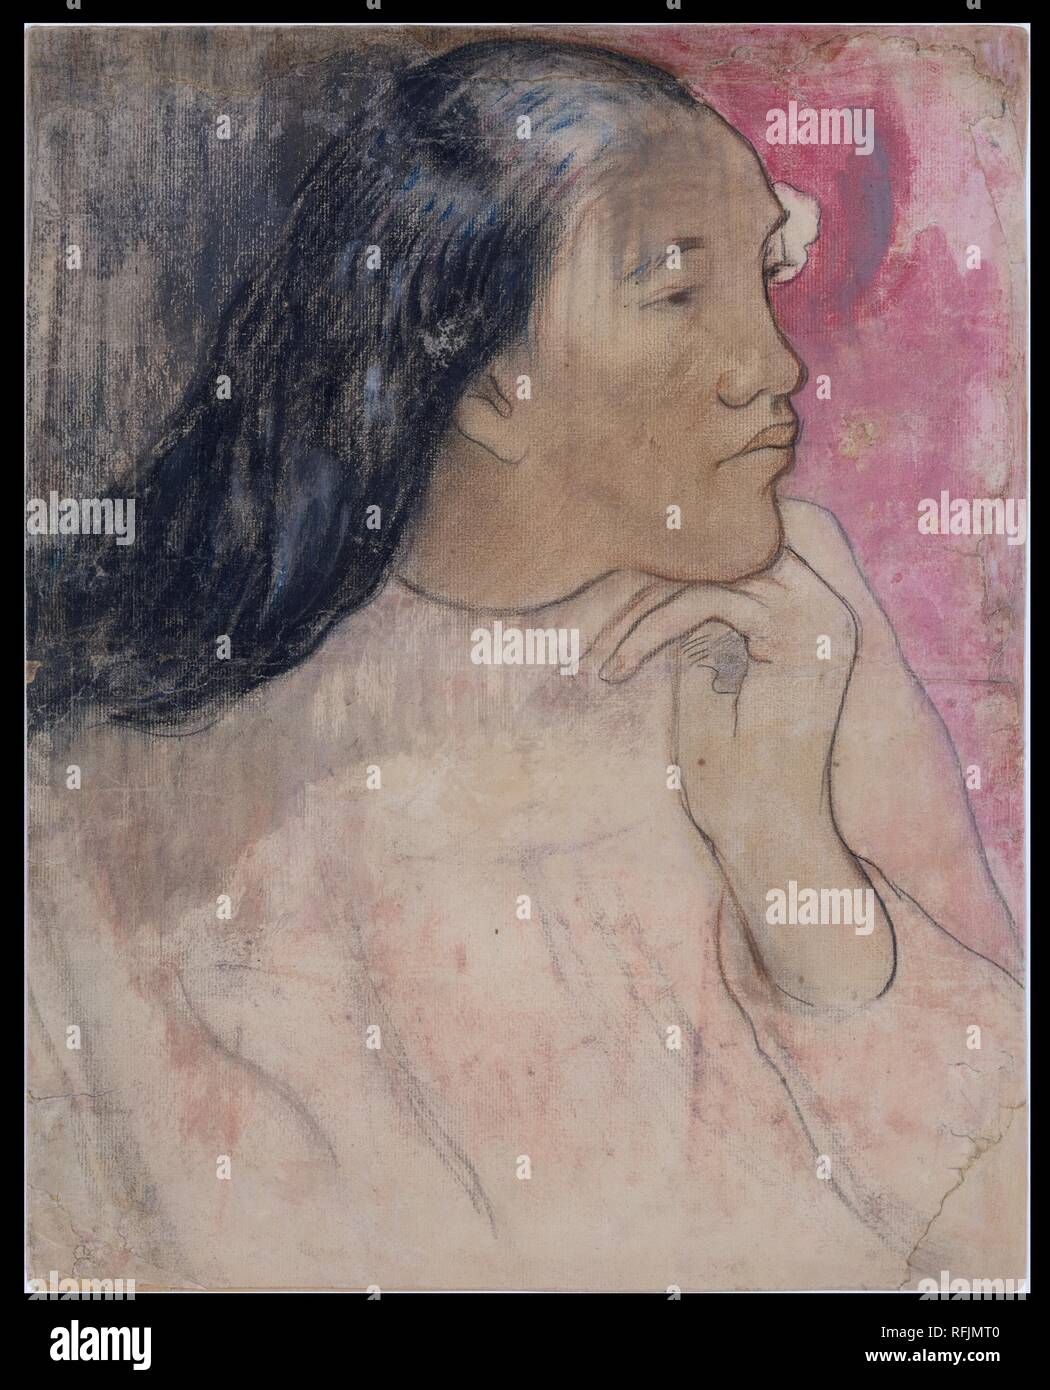 Tahitianischen Frau mit einer Blume im Haar. Artist: Paul Gauguin (Französisch, Paris 1848-1903 Atuona, Hiva Oa, Marquesas Inseln). Abmessungen: 15 3/8 x 11 7/8 in. (39 x 30,2 cm). Datum: 1891-92. Museum: Metropolitan Museum of Art, New York, USA. Stockfoto